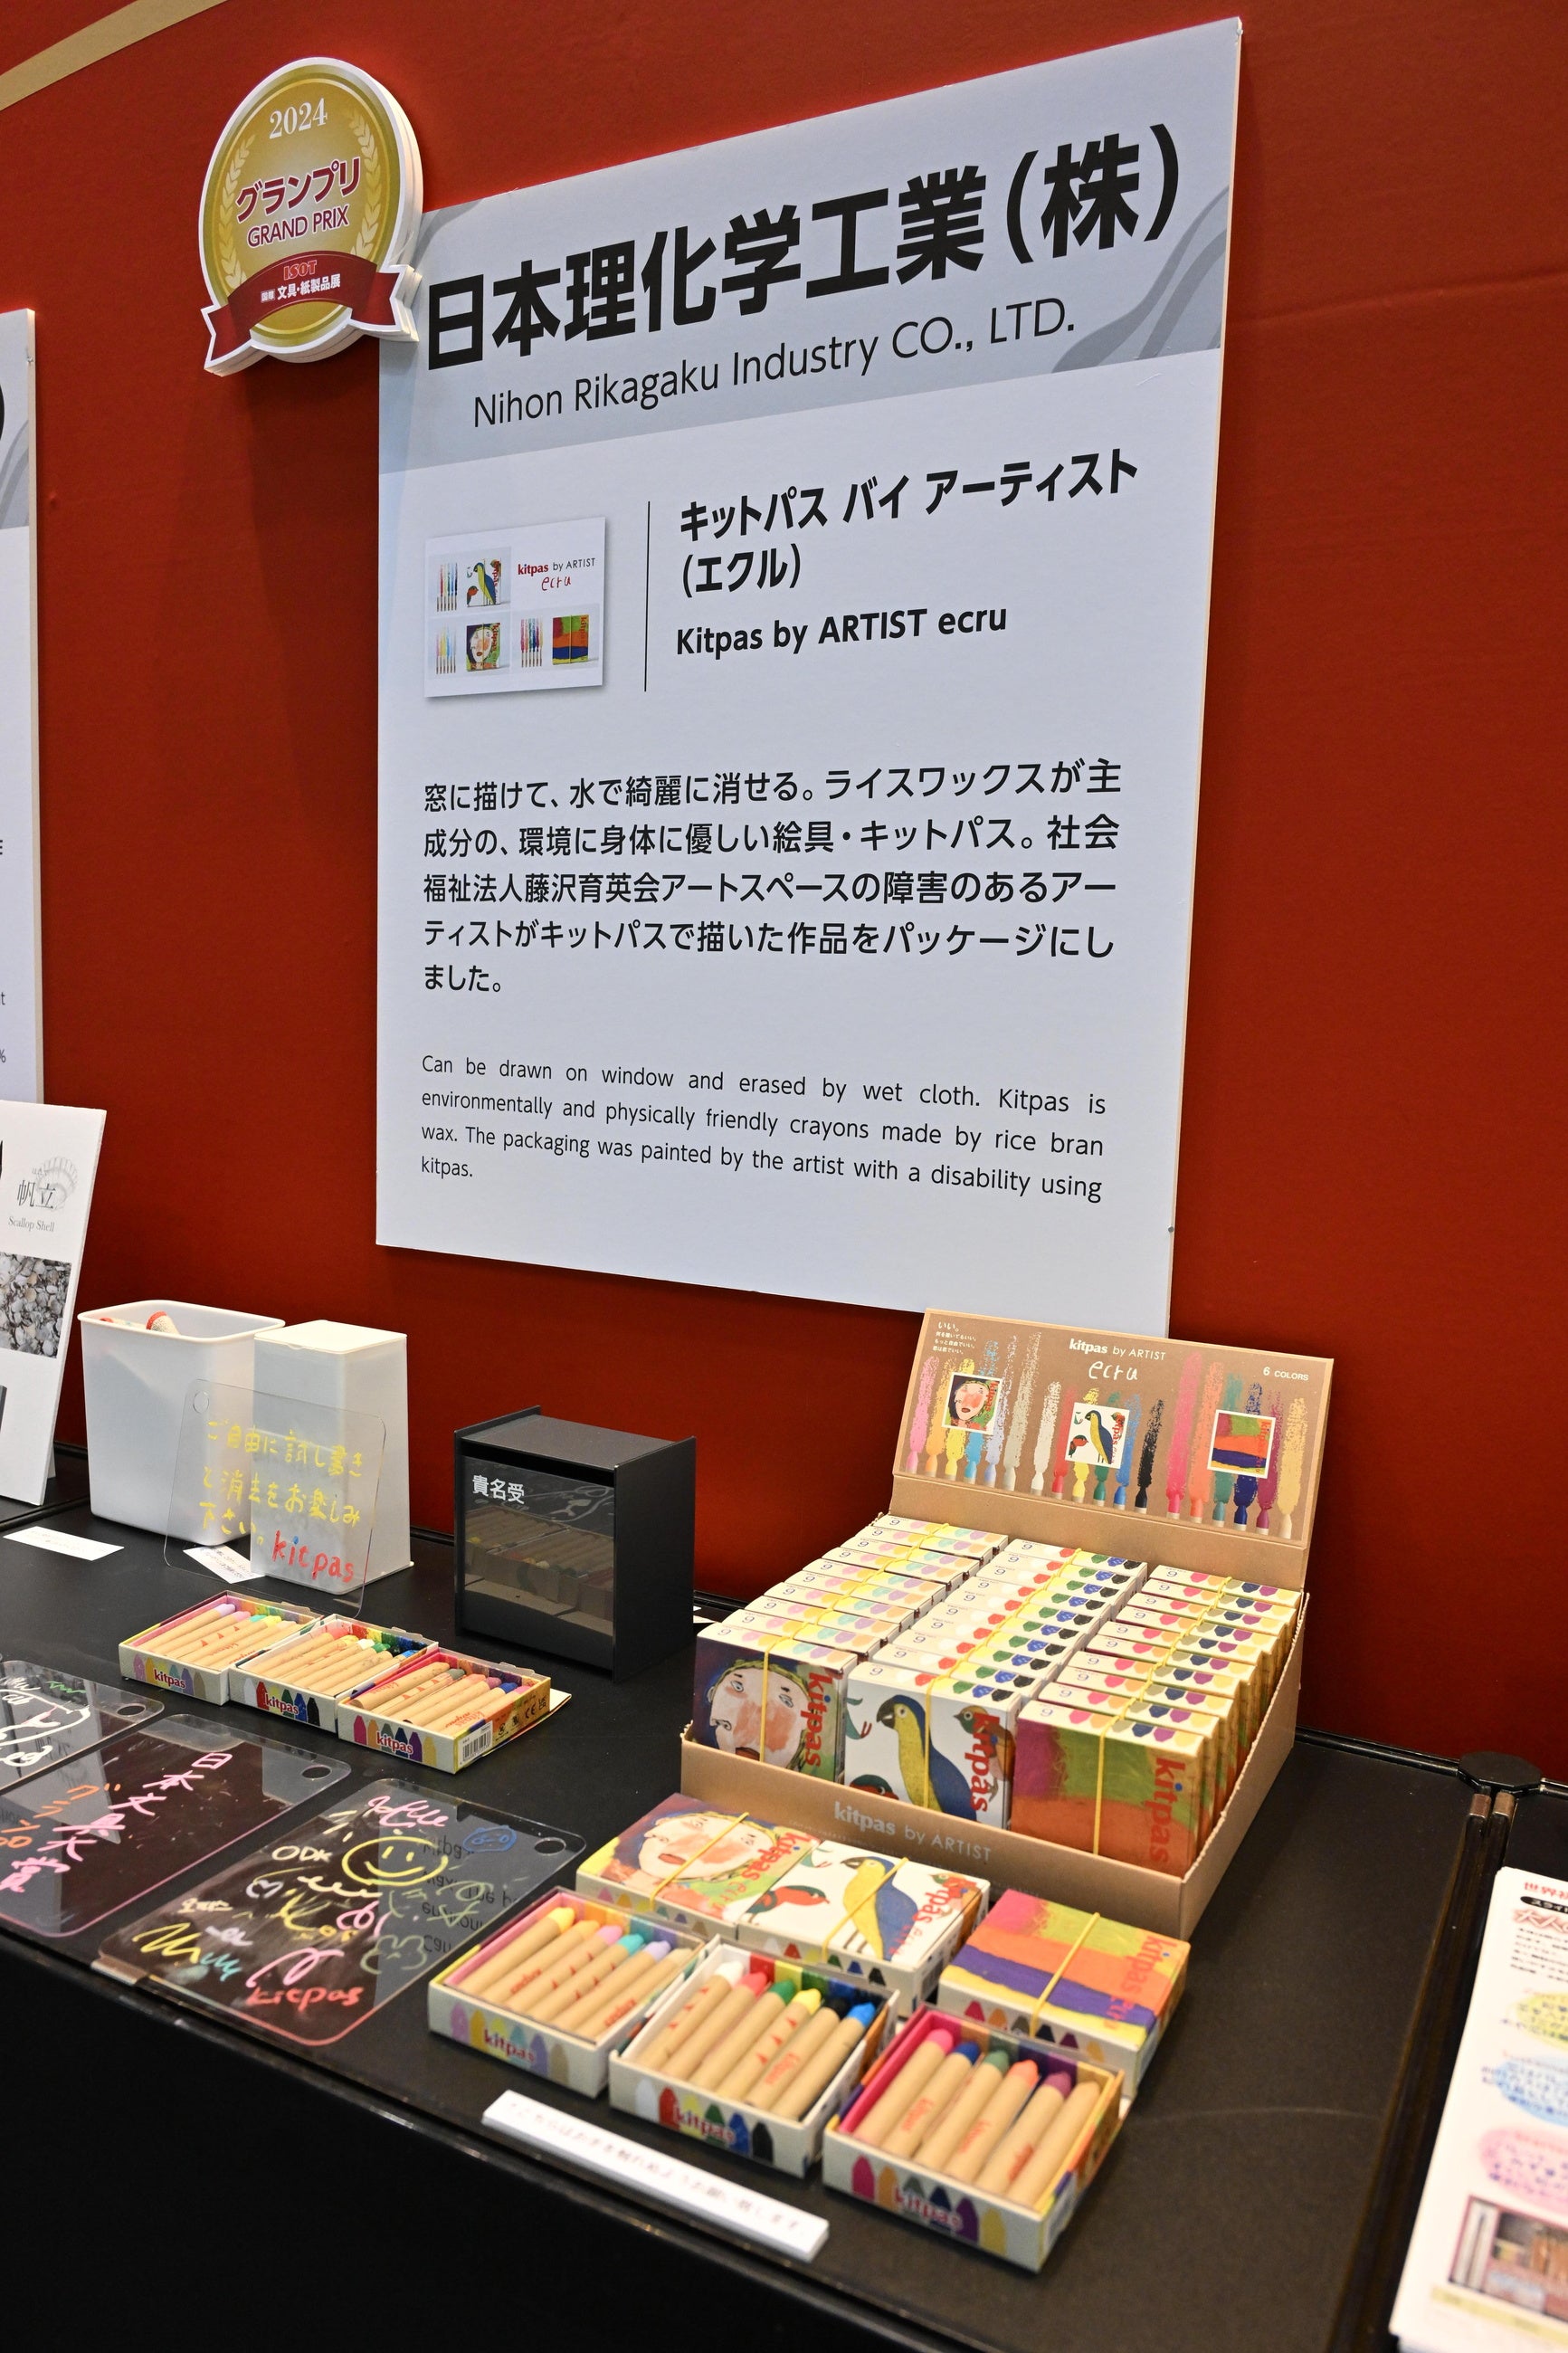 【日本文具大賞 グランプリ決定】米ぬかのワックスを主原料とした環境と身体にやさしい「絵の具」が受賞